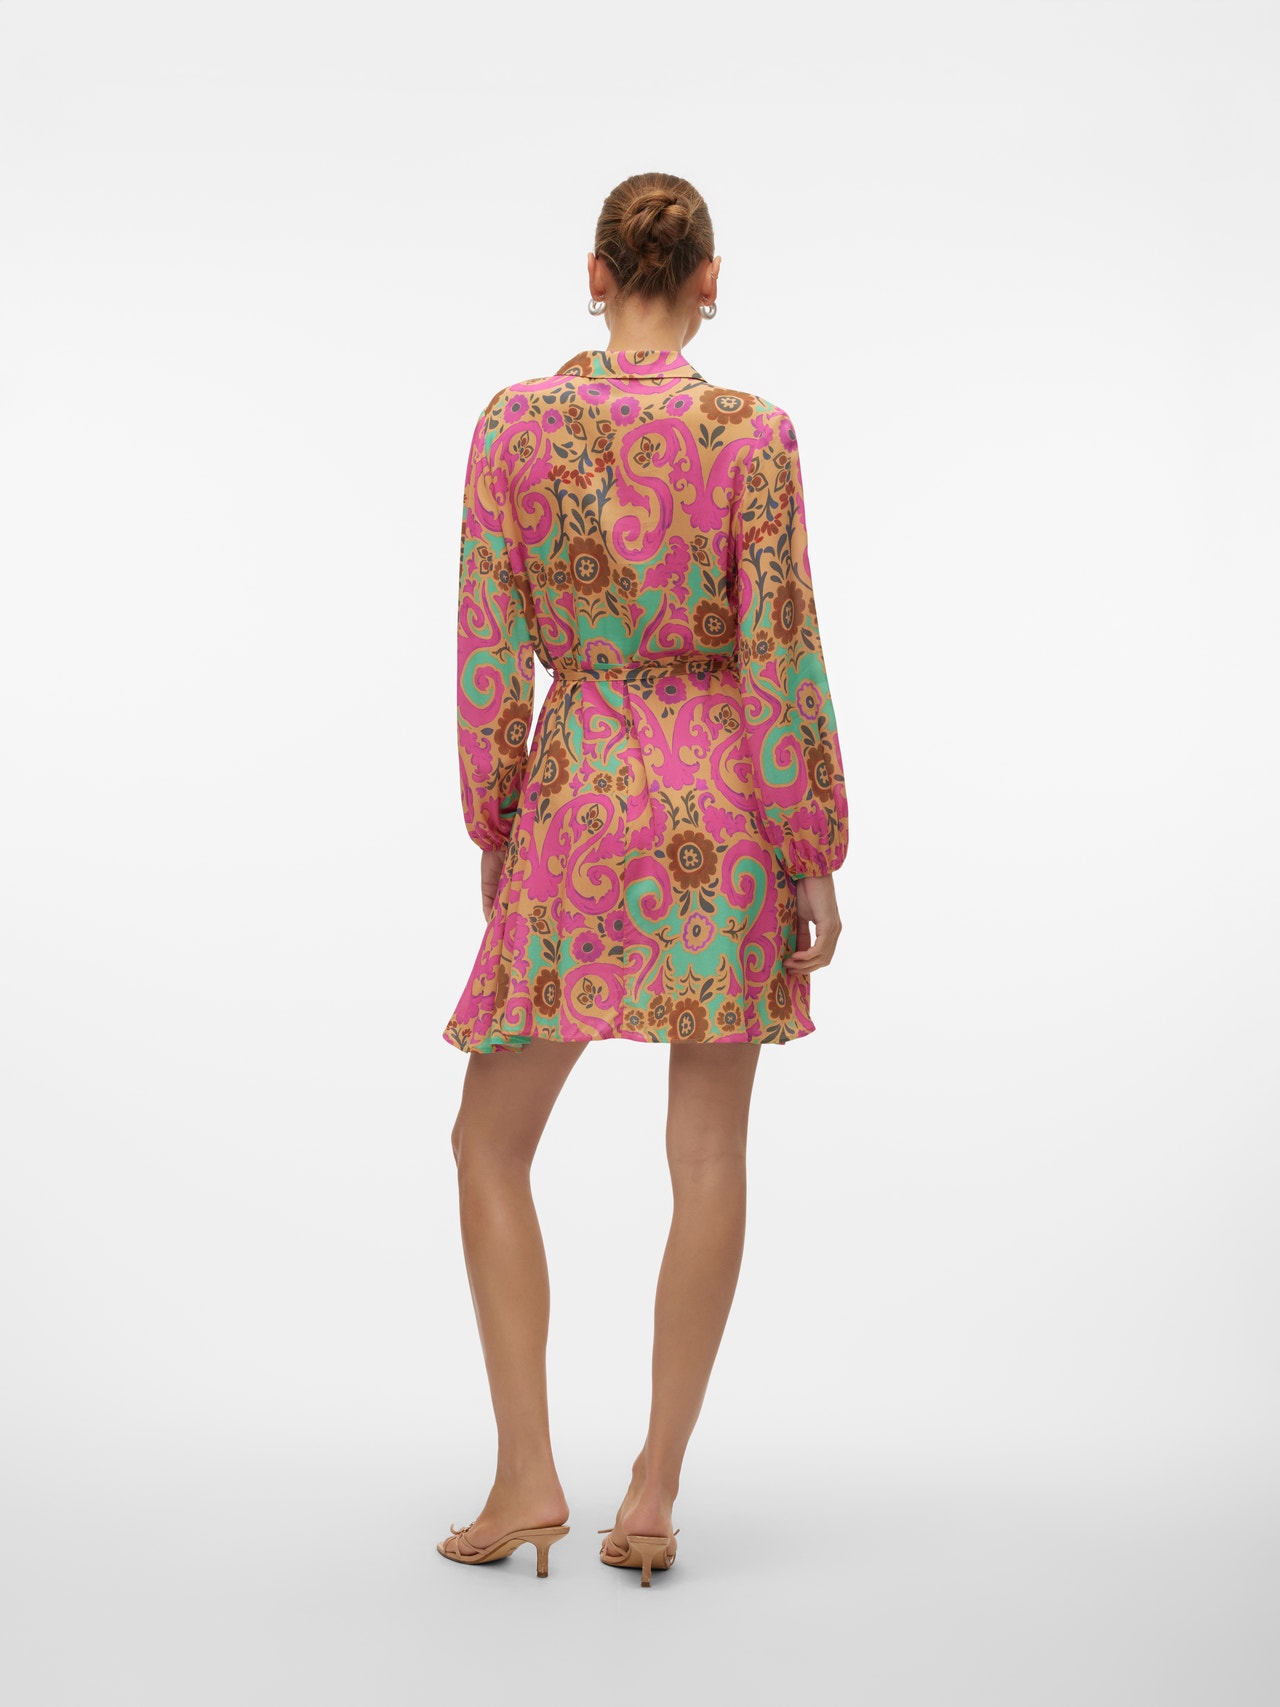 Vero Moda VMSOFIE Kort kjole -Raspberry Rose - 10316390